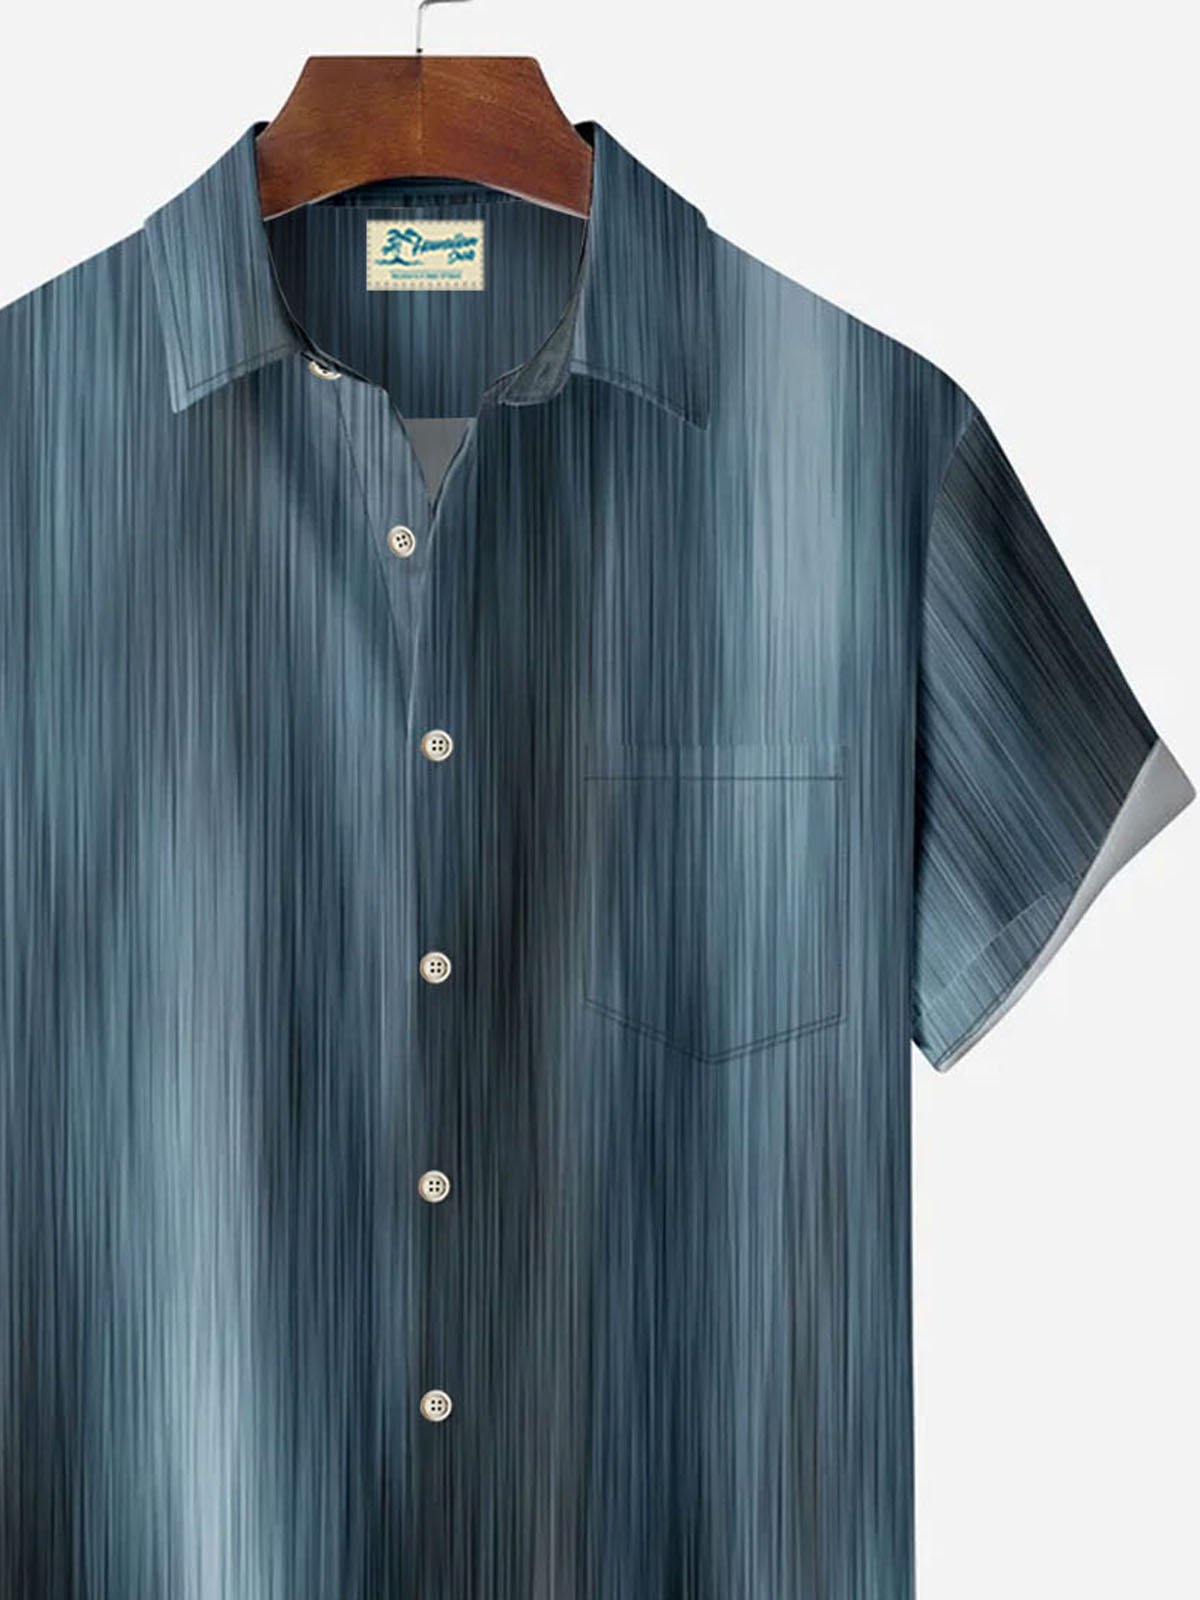 Royaura Vintage Textured Gradient Stripes Men's Button Pocket Shirt